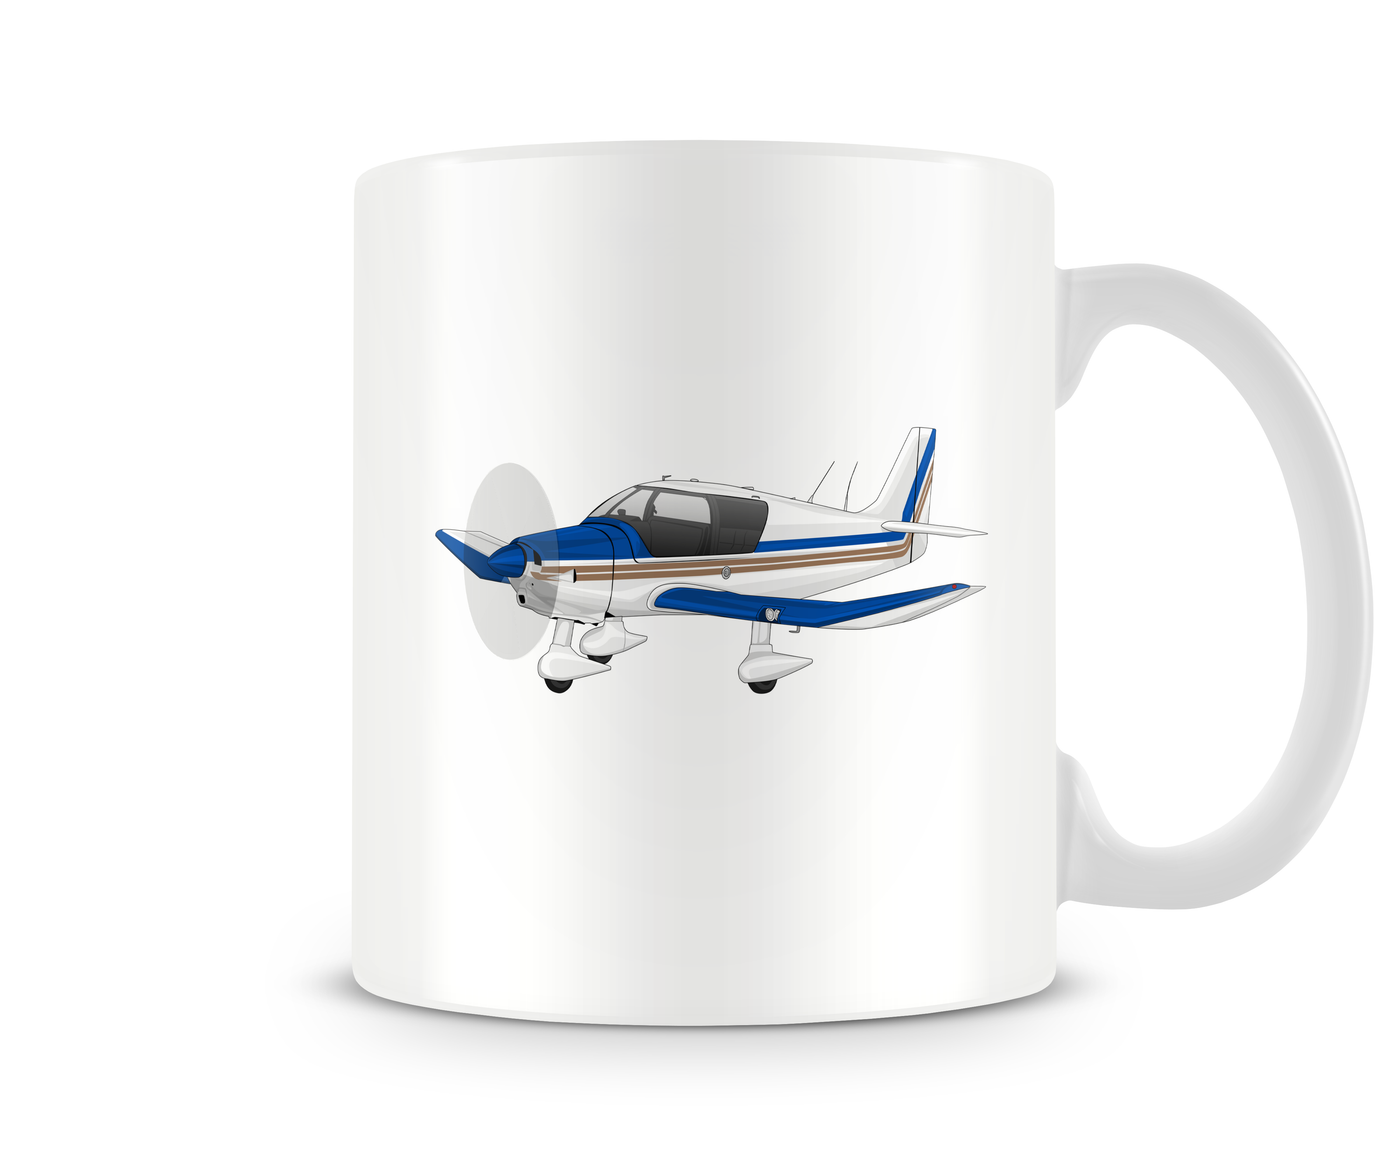 Robin DR400 Mug - Aircraft Mugs